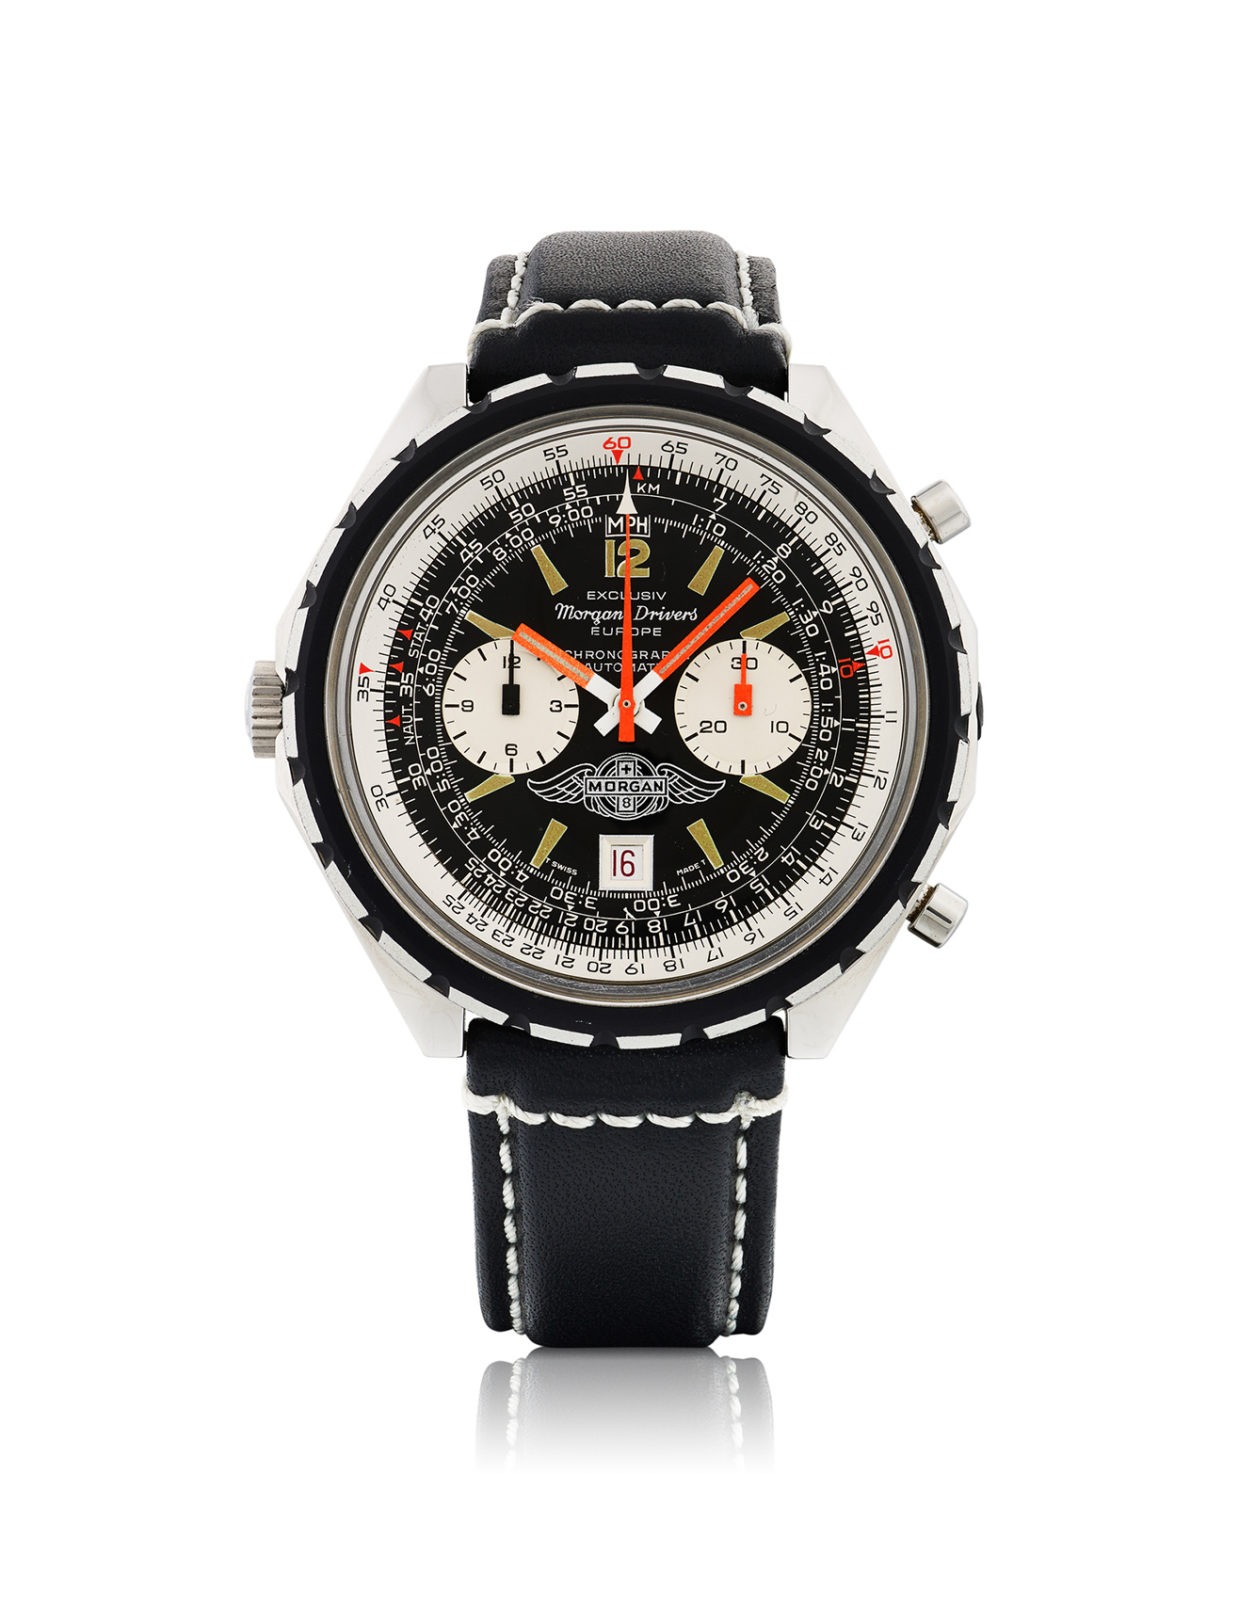 Antiquorum - Vente d'importantes montres récentes et de collection du 10 mai - Breitling Navitimer Morgan Plus 8